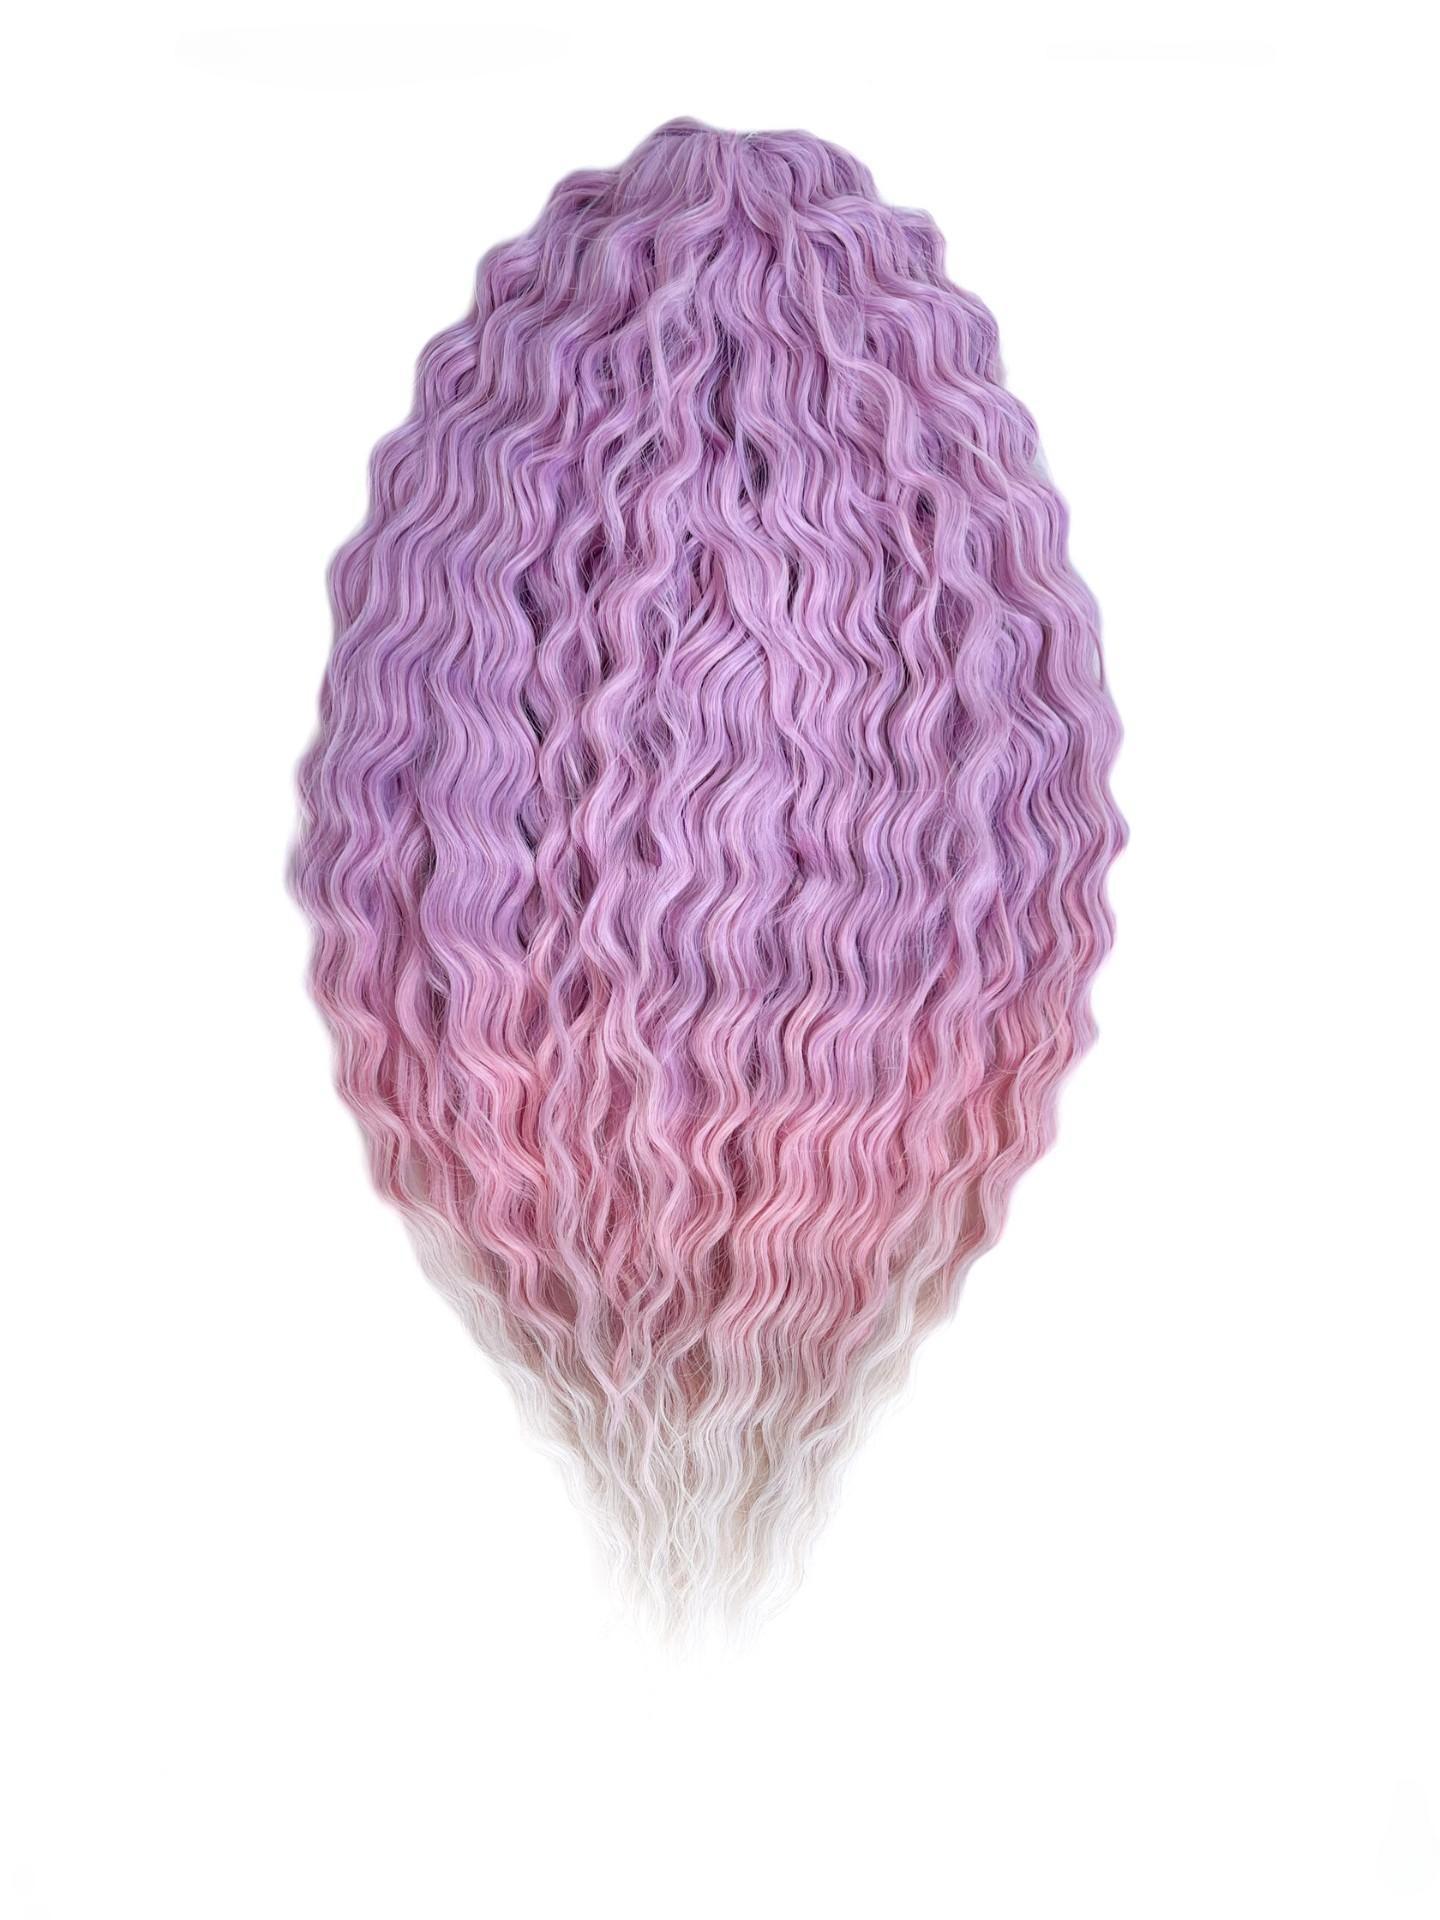 Афрокудри для плетения волос Ariel Ариэль цвет PPG3 длина 60см вес 300г